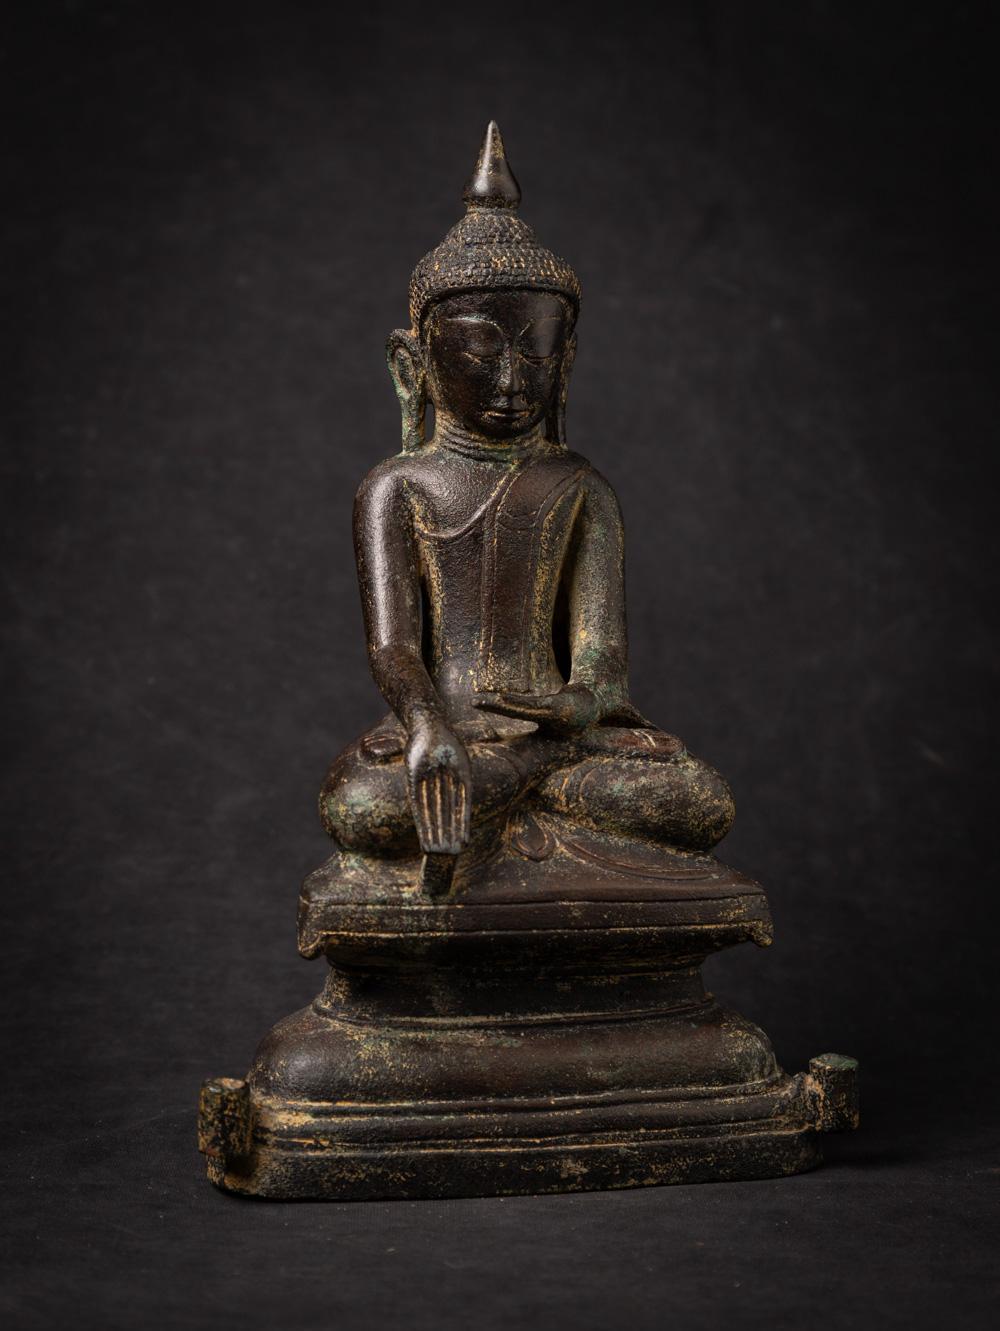 Diese antike Buddha-Statue aus Bronze ist ein wirklich einzigartiges und besonderes Sammlerstück. Sie ist 30,2 cm hoch, 19,1 cm breit und 9,5 cm tief, besteht aus Bronze und wiegt 3,26 kg. Die komplizierten Details der Statue weisen Spuren einer